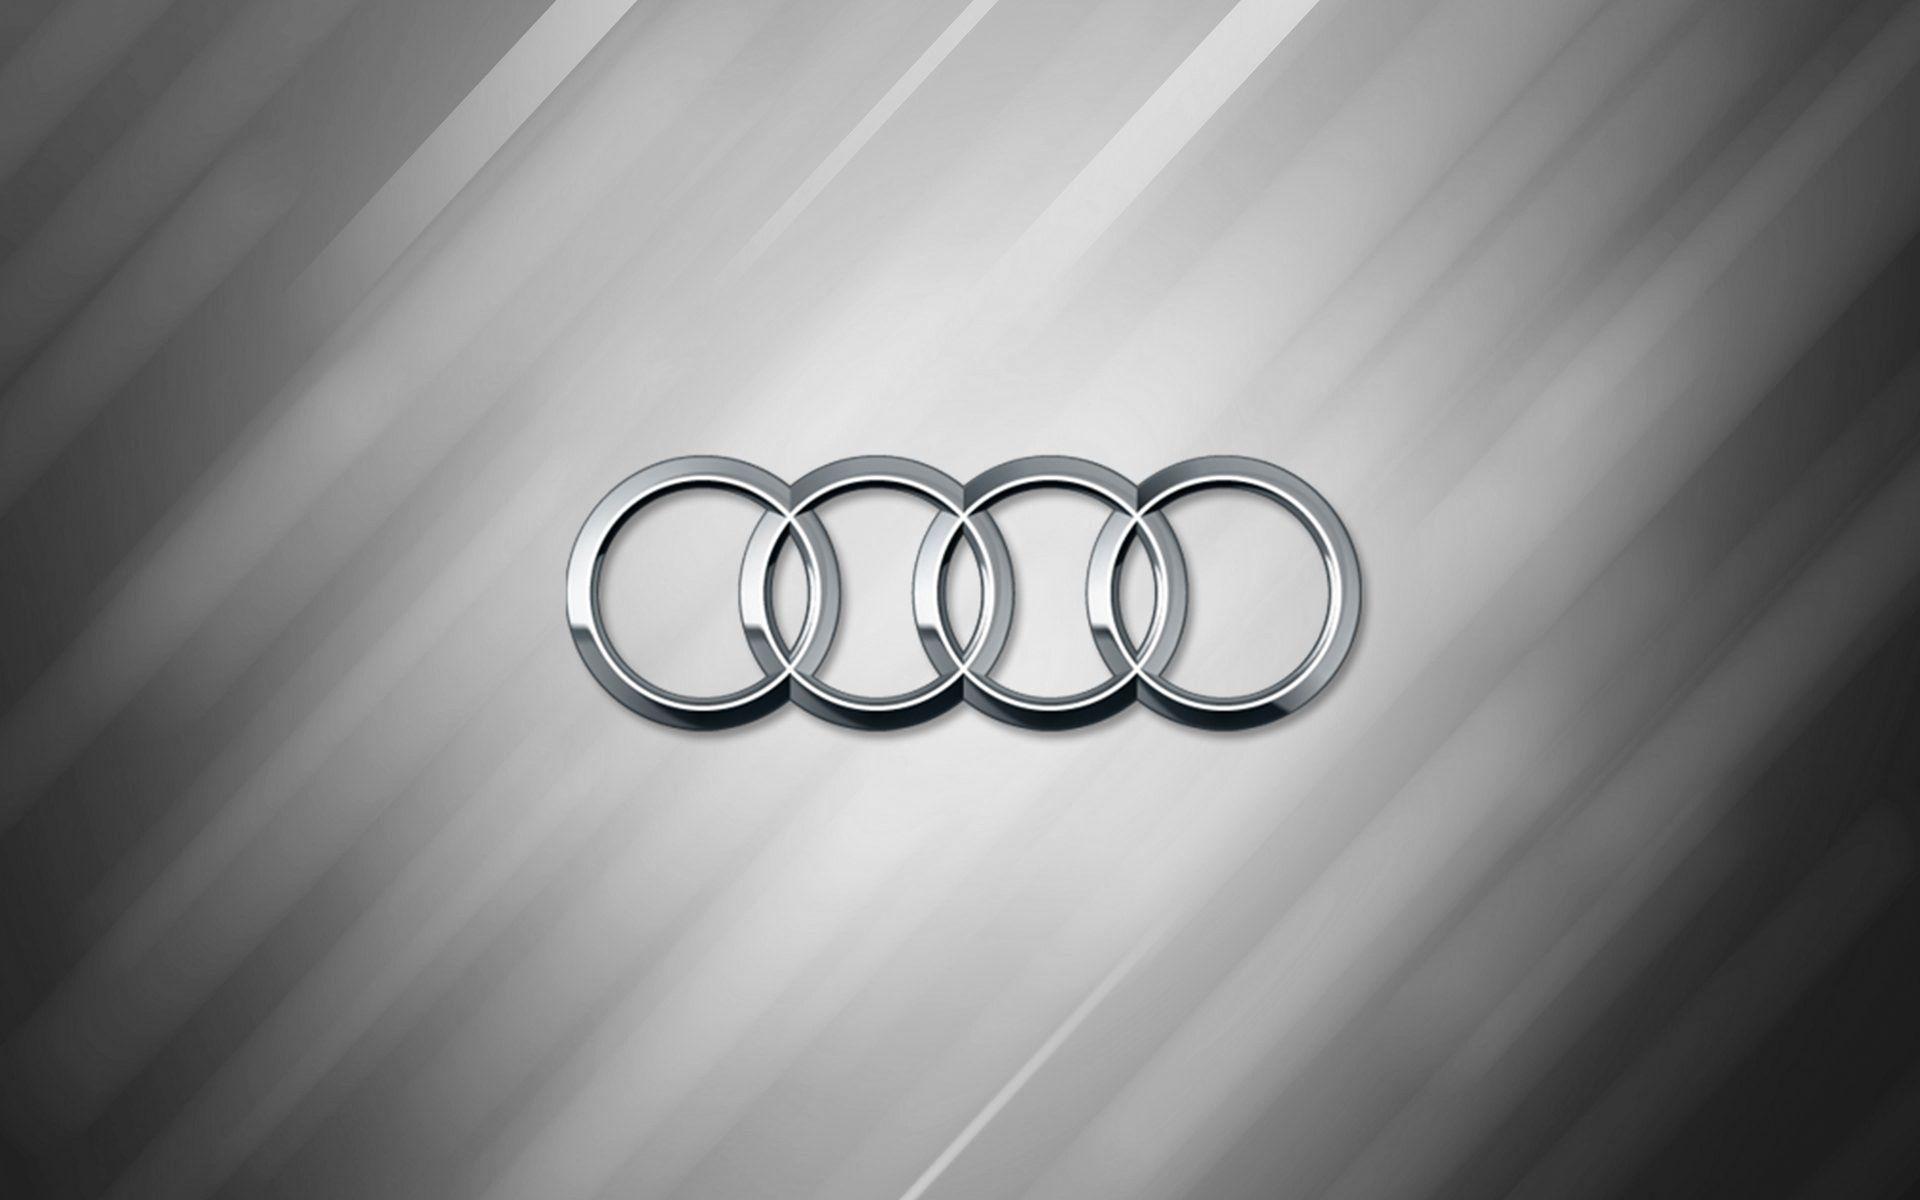 Audi Logo Wallpapers Wallpaper Cave